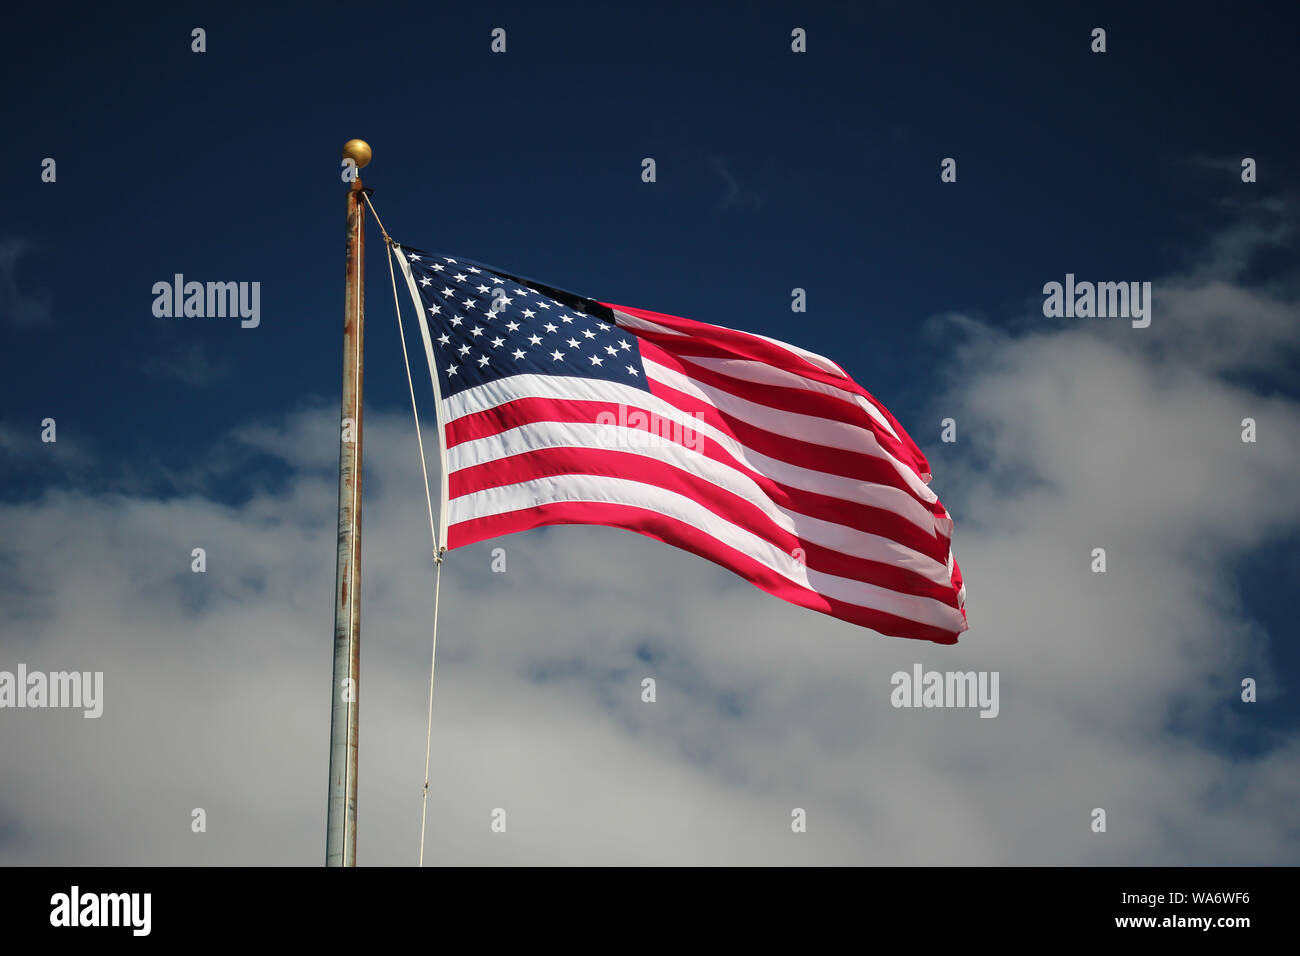 Amerikanische Flagge auf einer Stange schwankend gegen eine lebendige blauer Himmel mit weißen Wolken Stockfoto